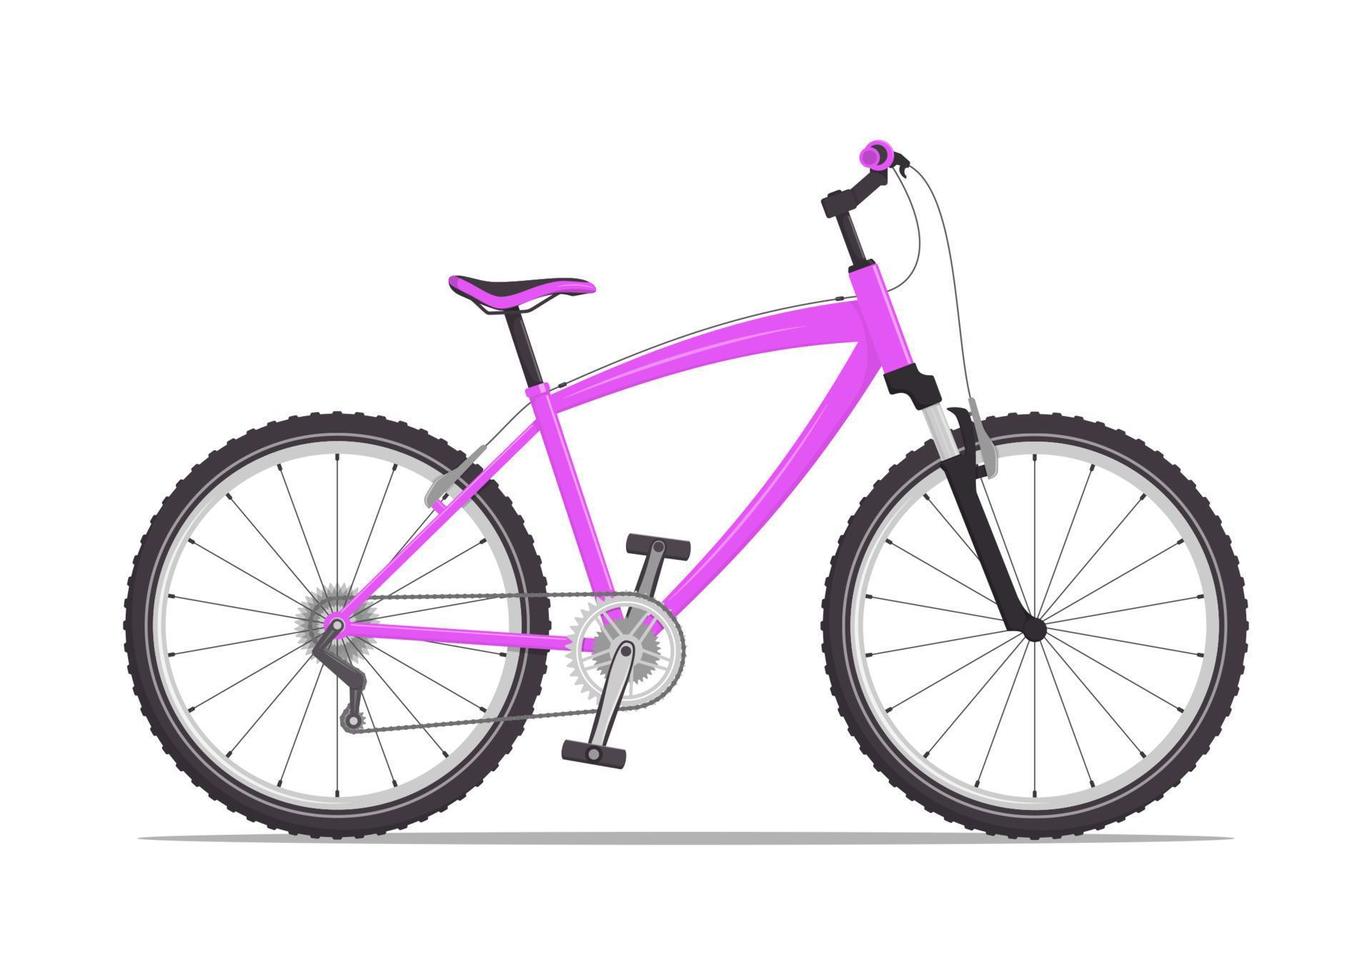 cidade moderna ou mountain bike com freios v. bicicleta multi-velocidade para adultos. ilustração em vetor plana, isolada no branco.